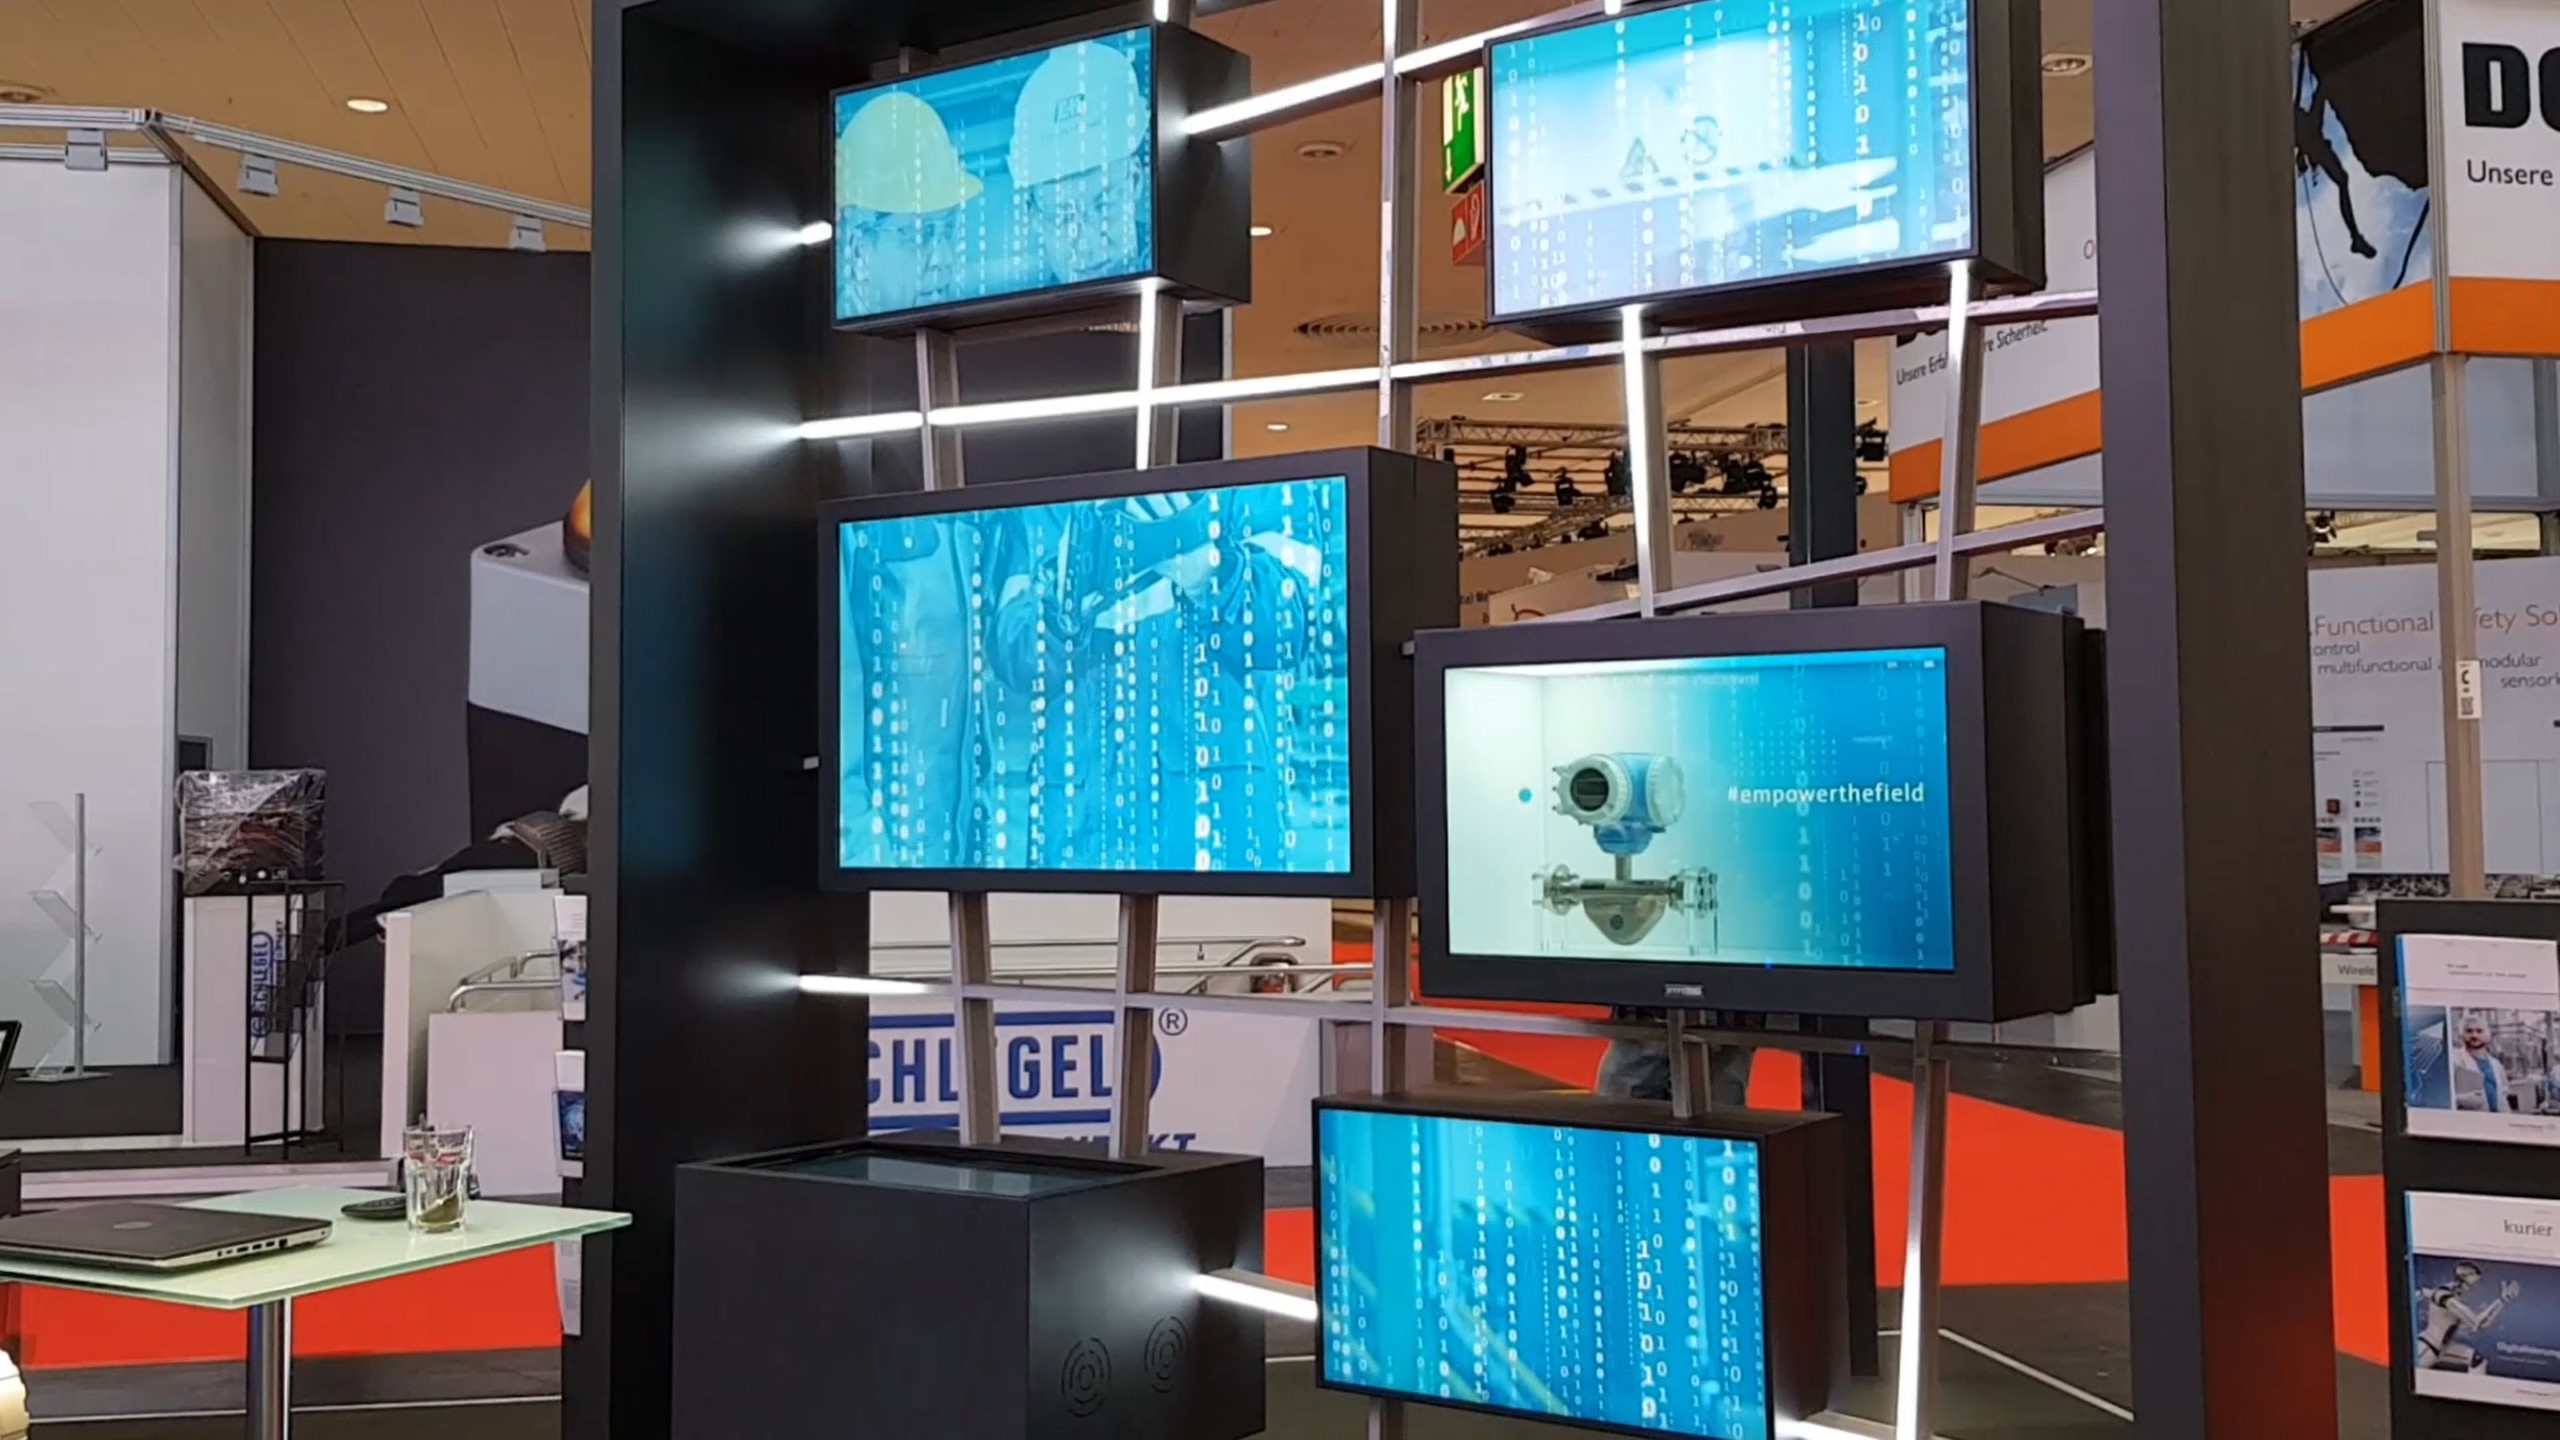 Smartgrid Exponat von Endress + Hauser mit Holografischem Display